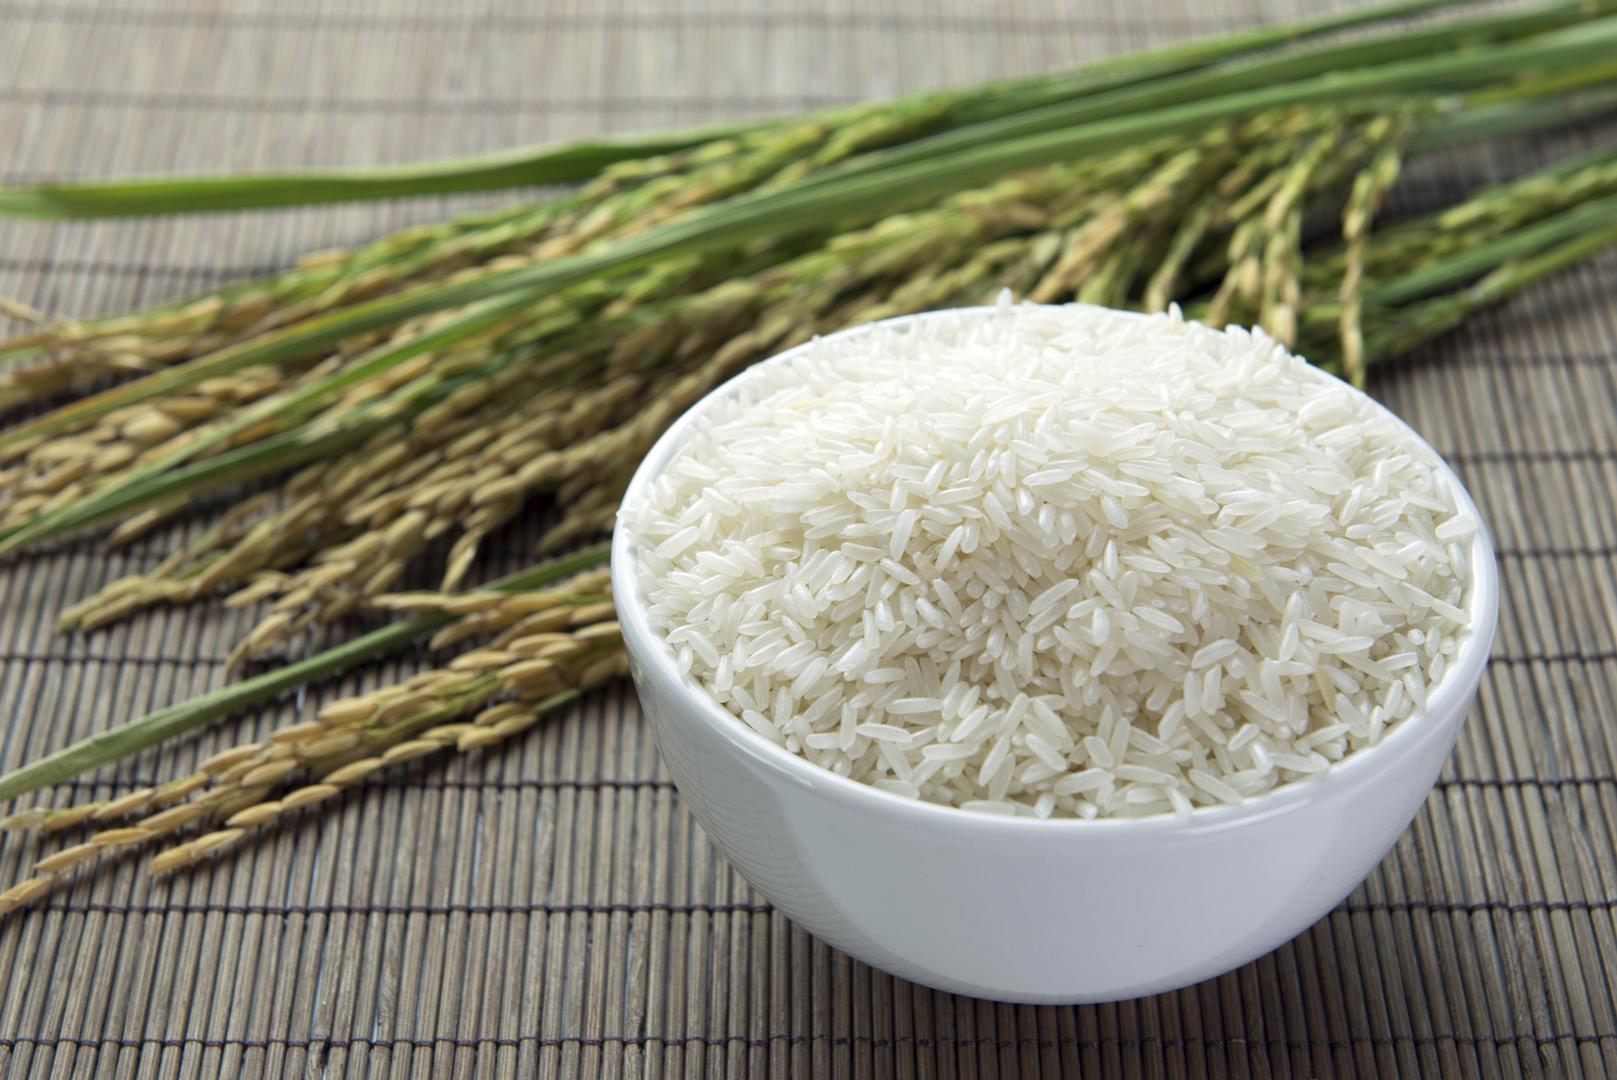 Dodavanje vode u rižu prilikom podgrijavanja osigurat će da riža ostane svježa i rehidrirana.